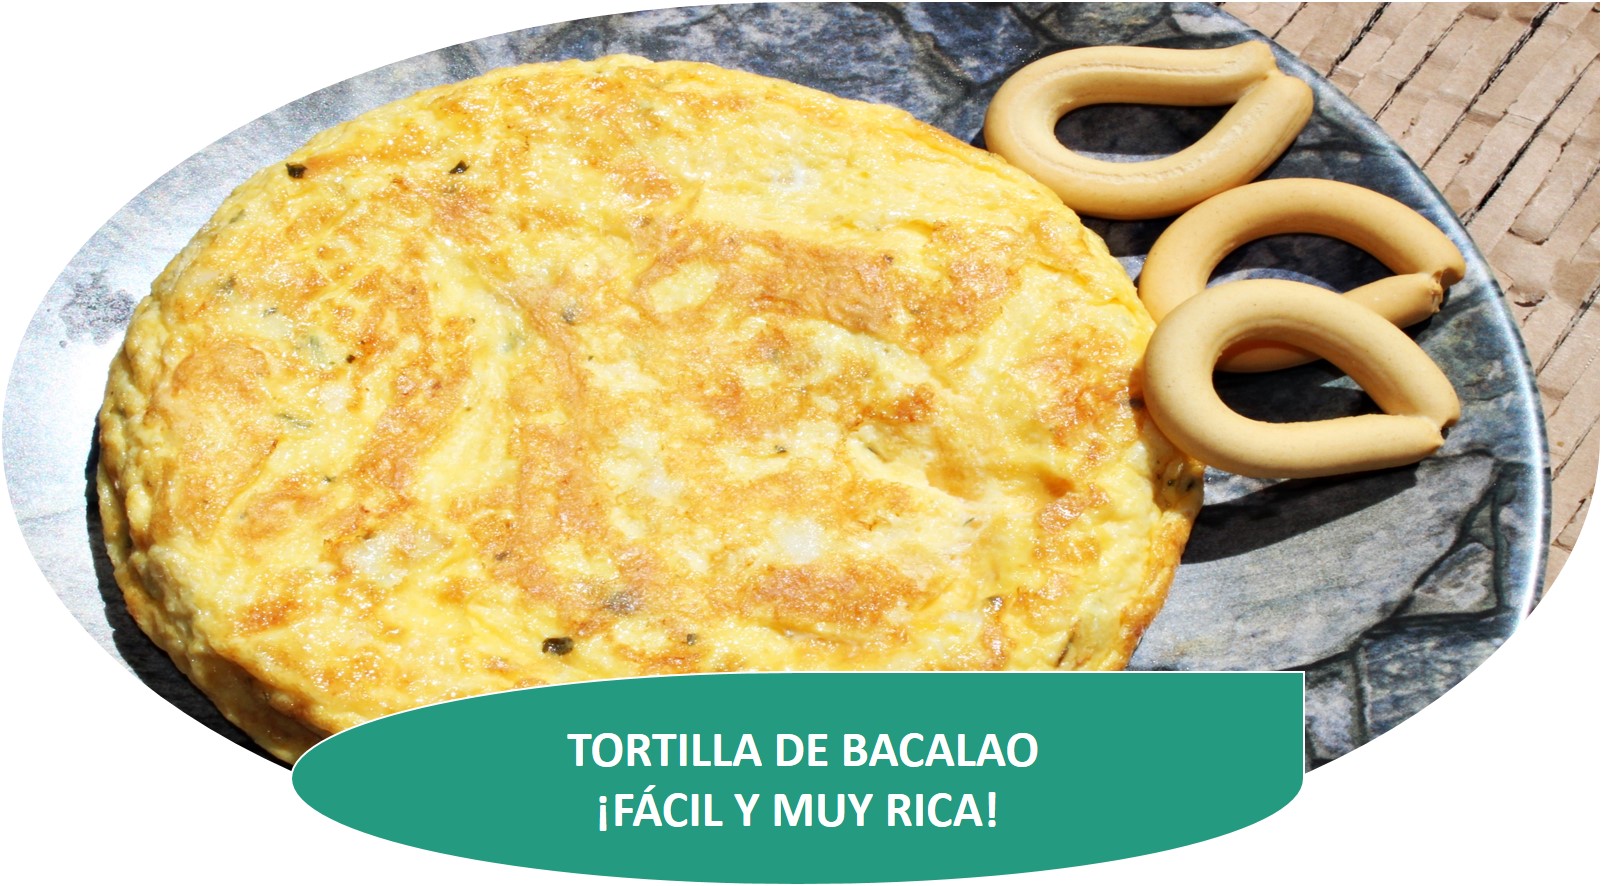 TORTILLA DE BACALAO {FÁCIL Y MUY RICA}